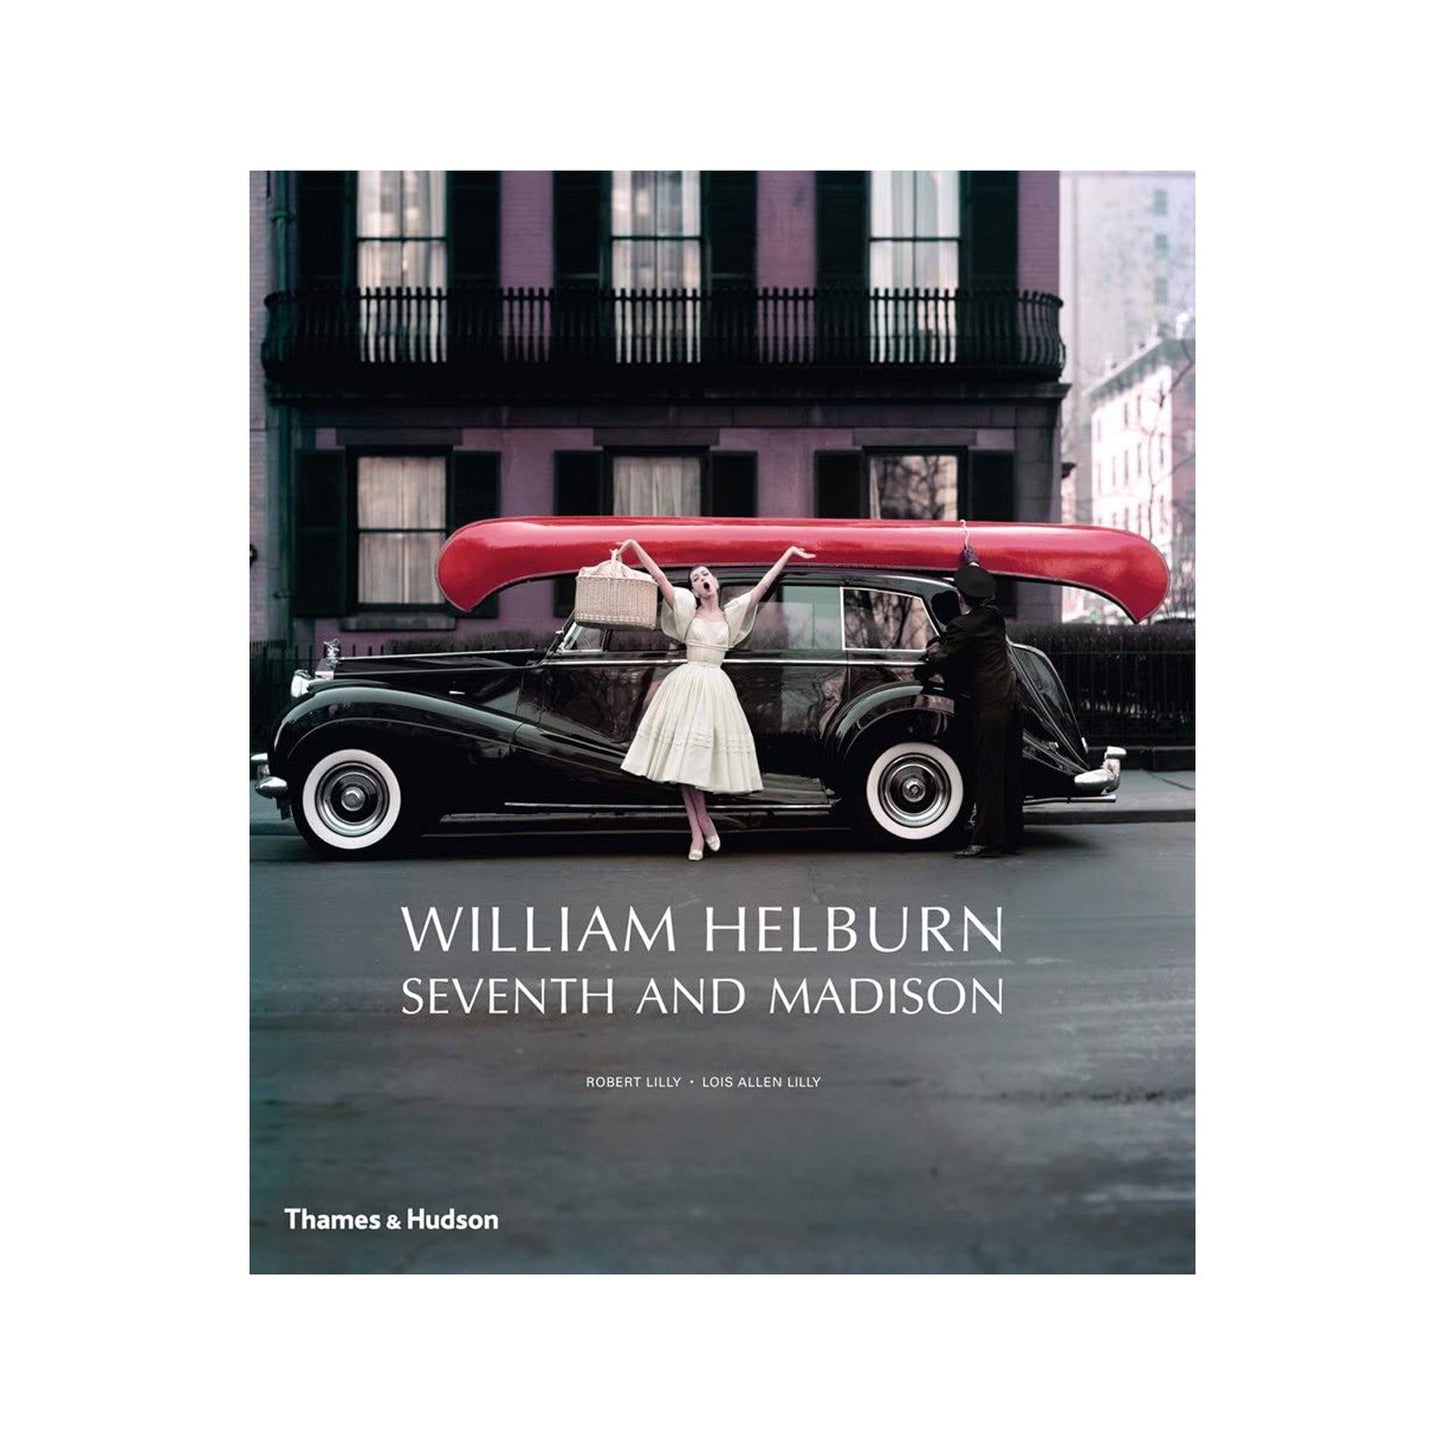 William Helborn Photo Museum Ireland